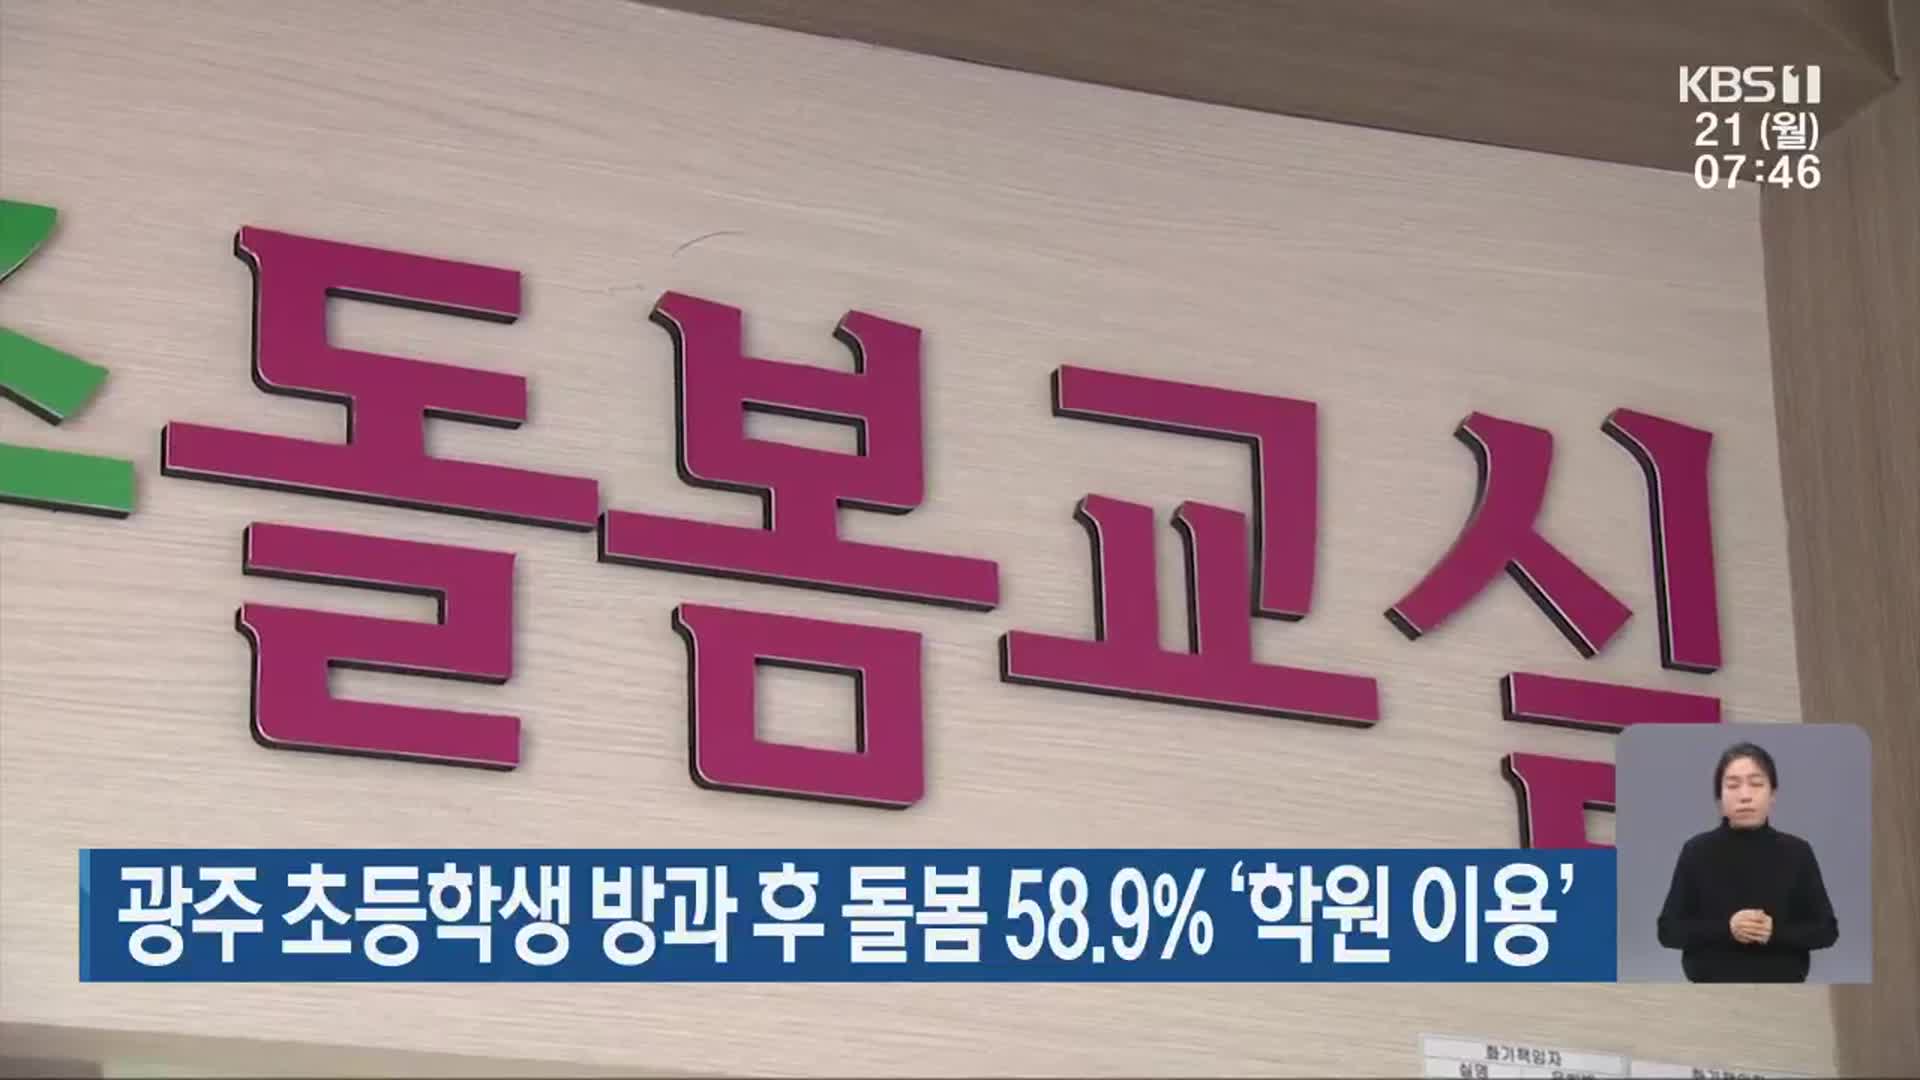 광주 초등학생 방과 후 돌봄 58.9% ‘학원 이용’